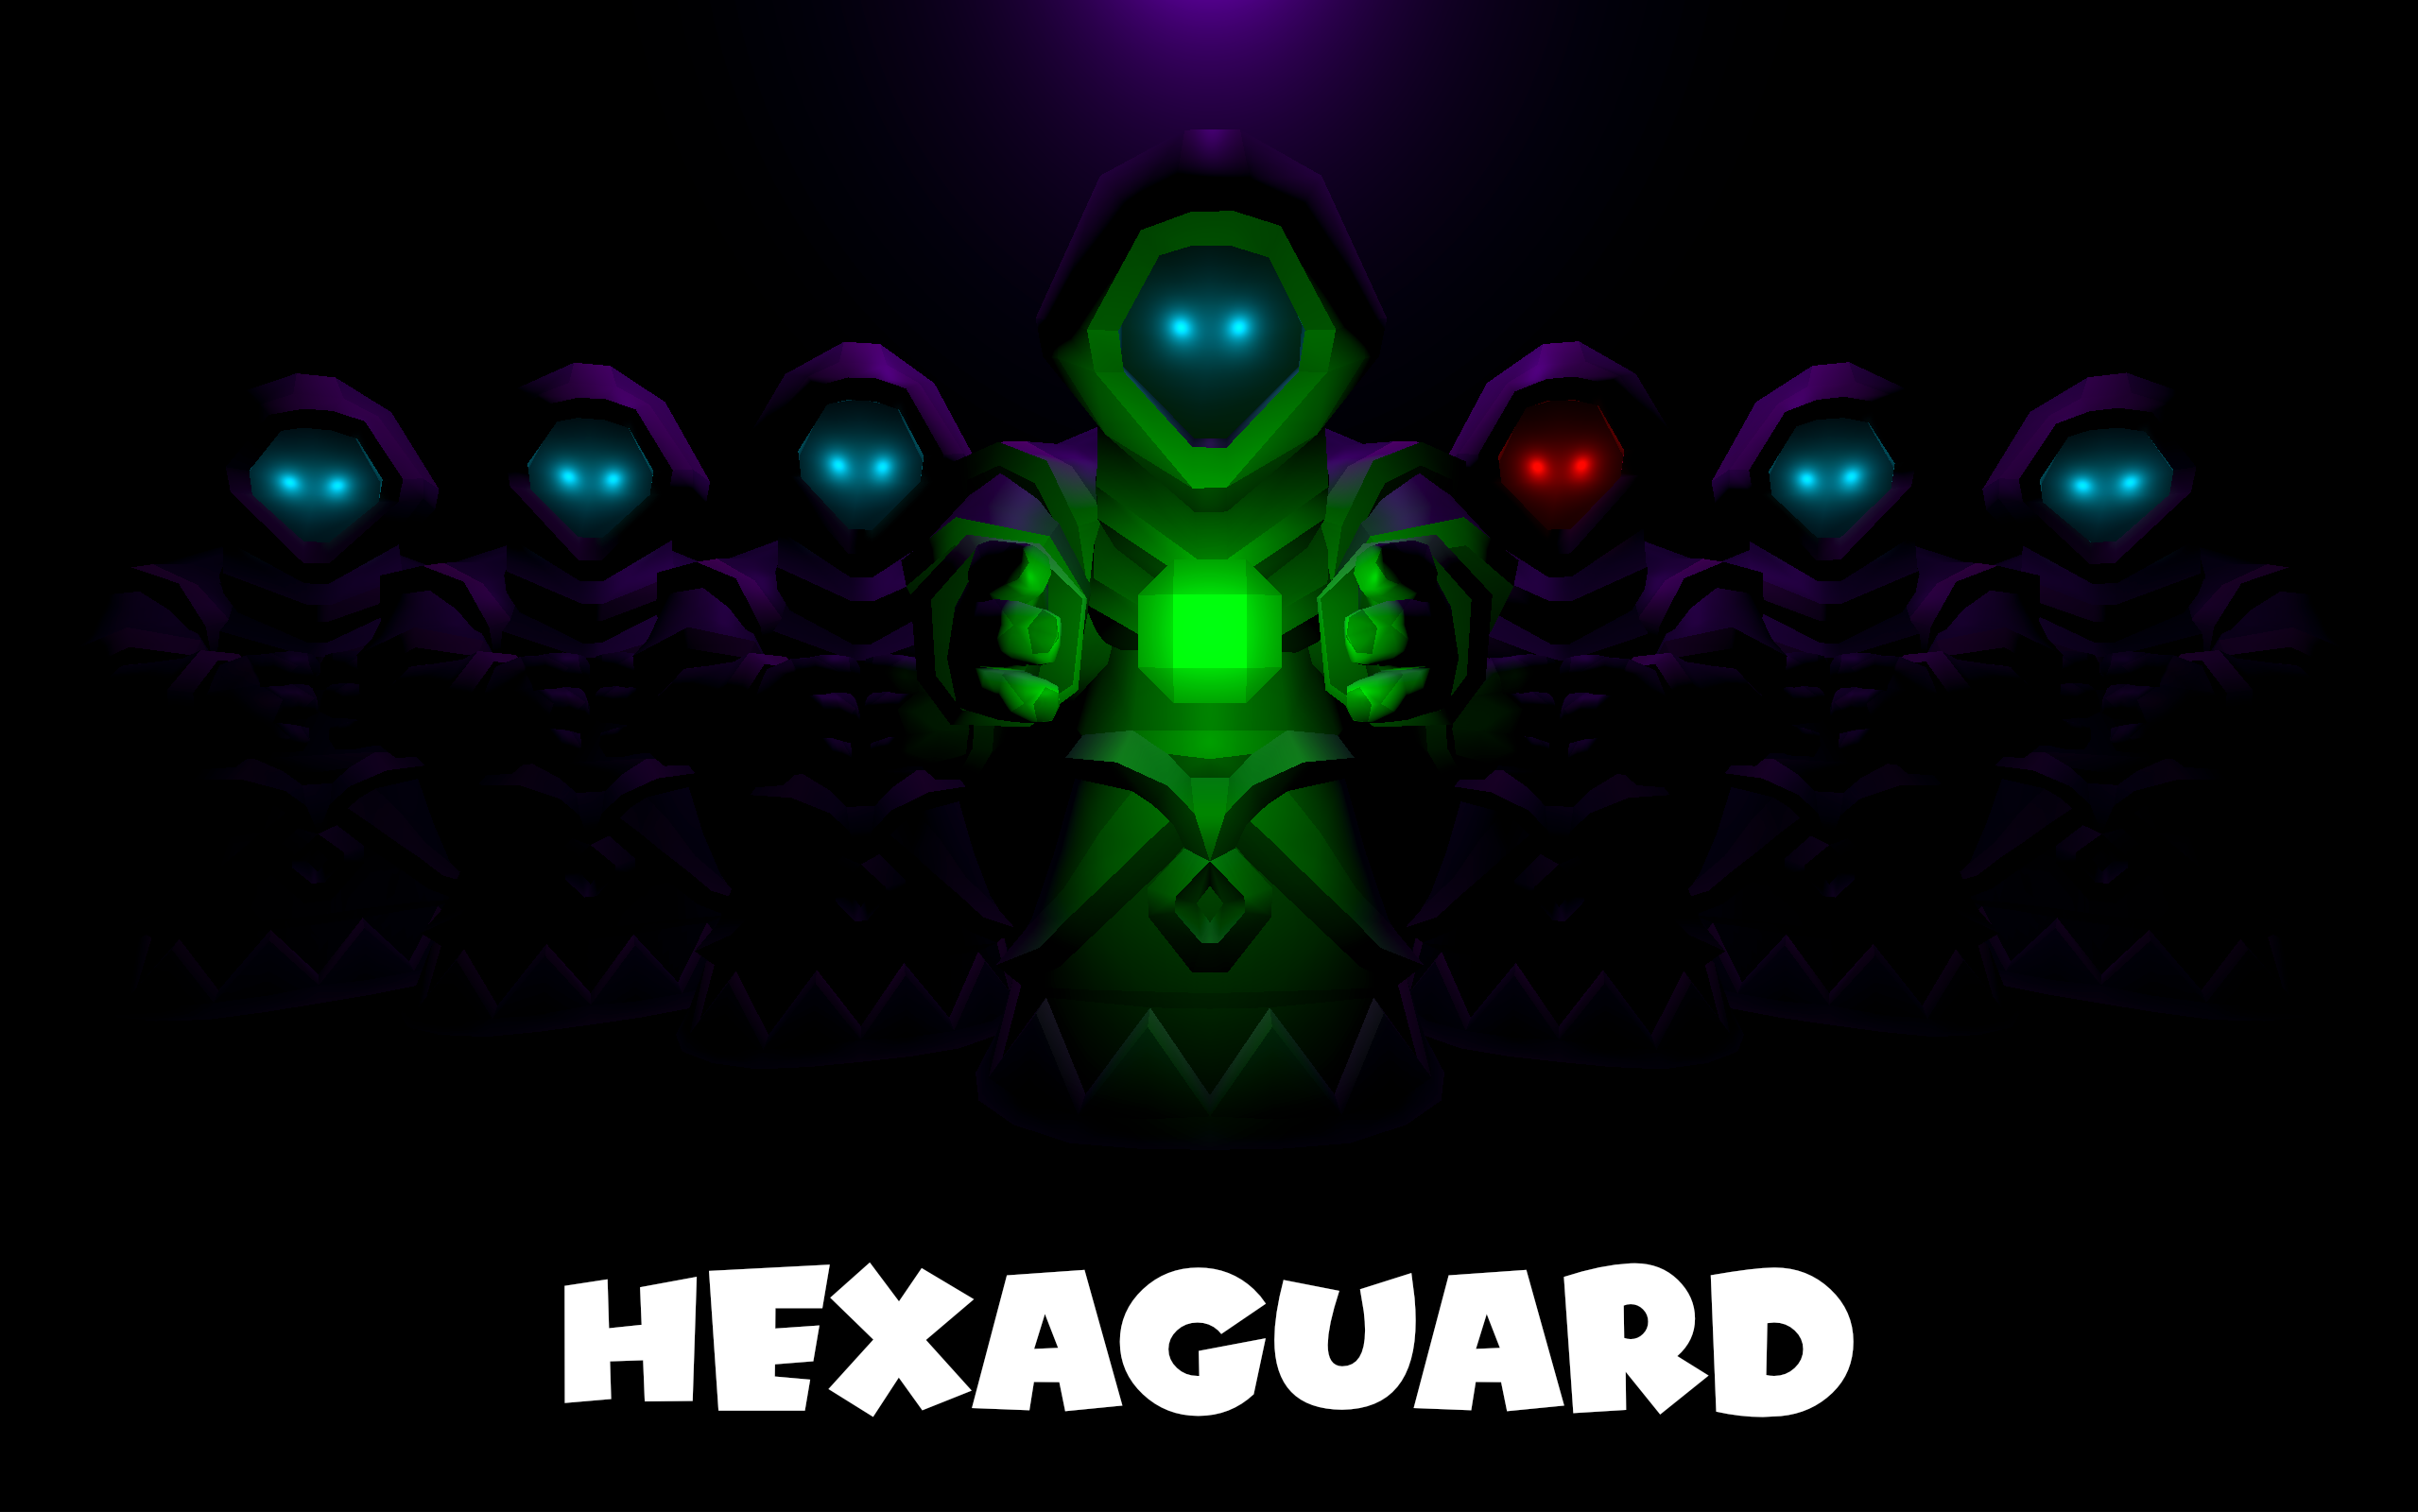 Hexaguard